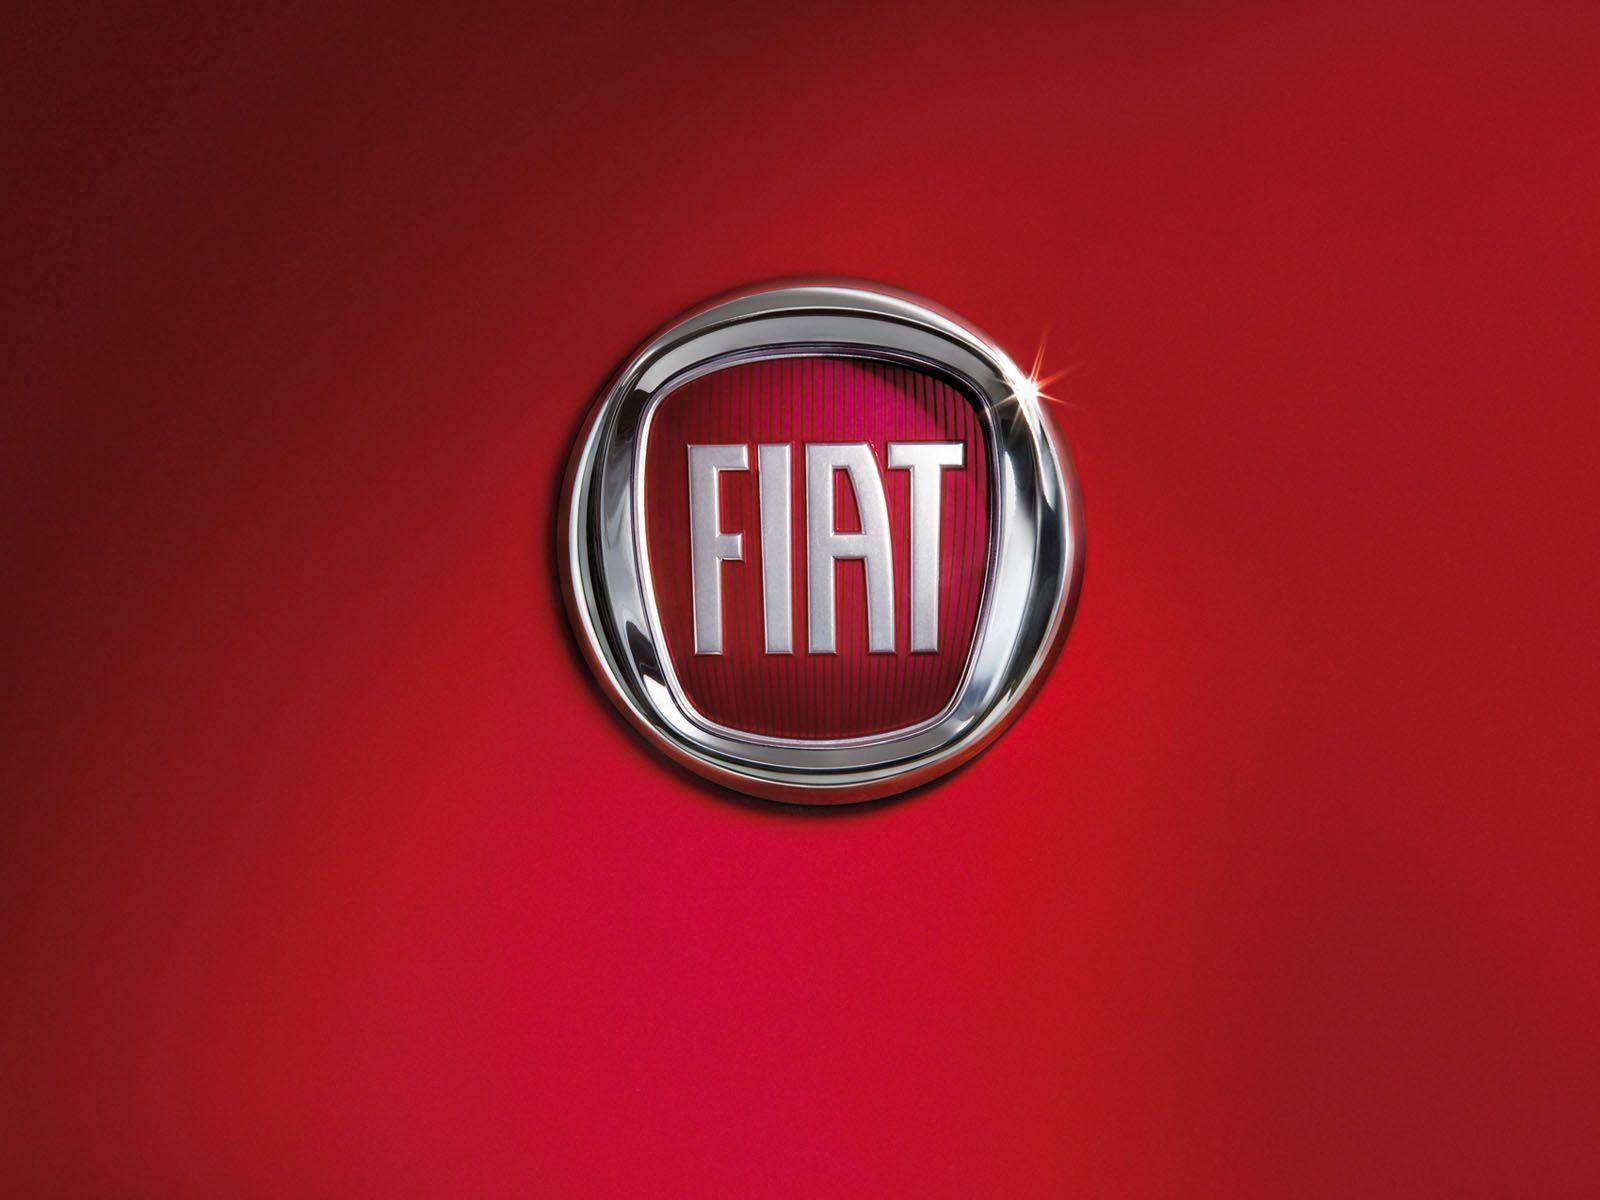 Fiat Image